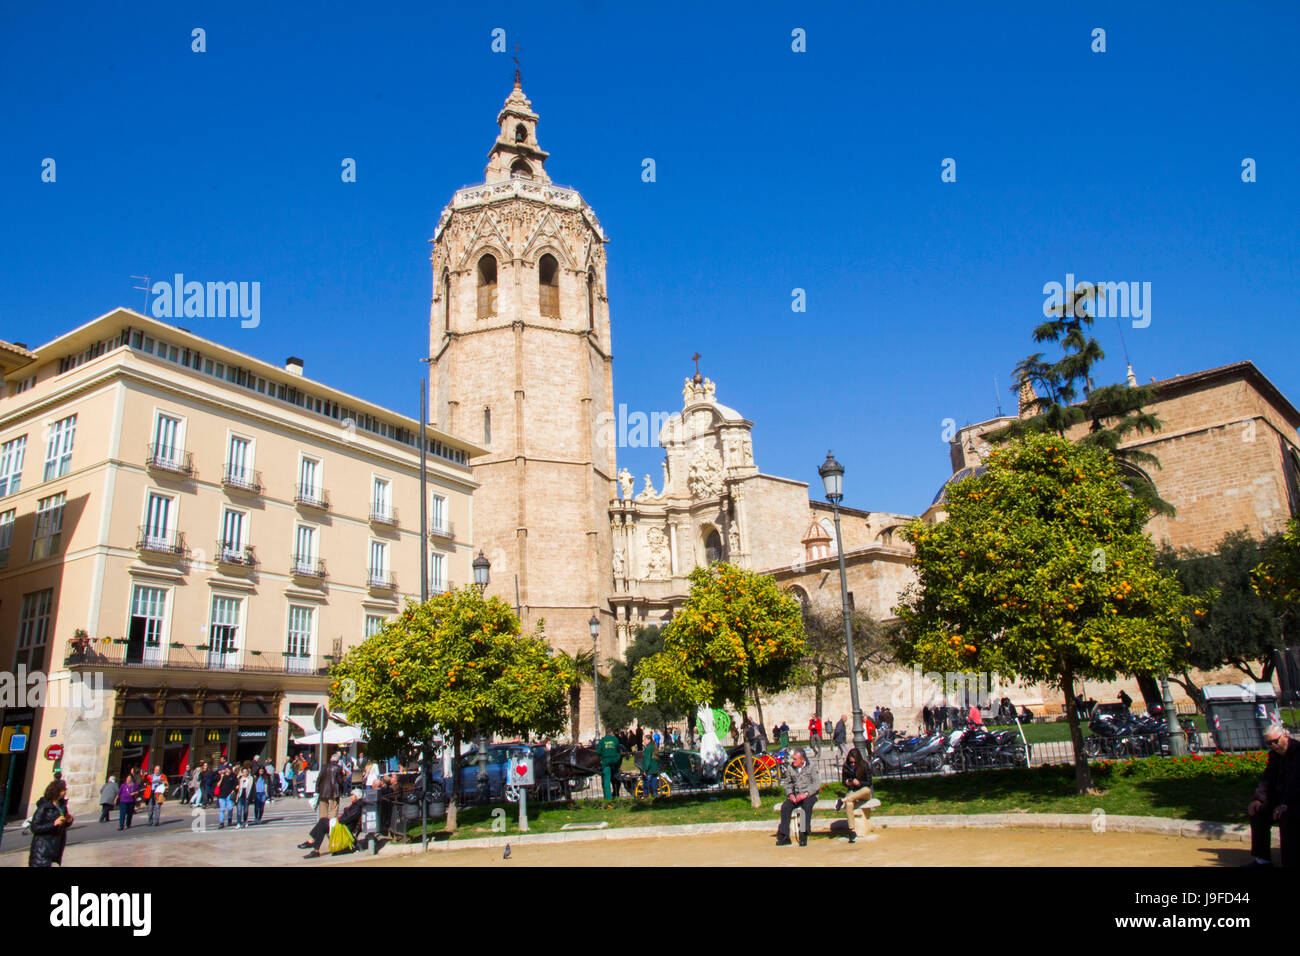 Vue de la Plaza de la Reina, le clocher de style gothique, les fronts Micalet ou la cathédrale de Valence, Valence, Espagne. Banque D'Images